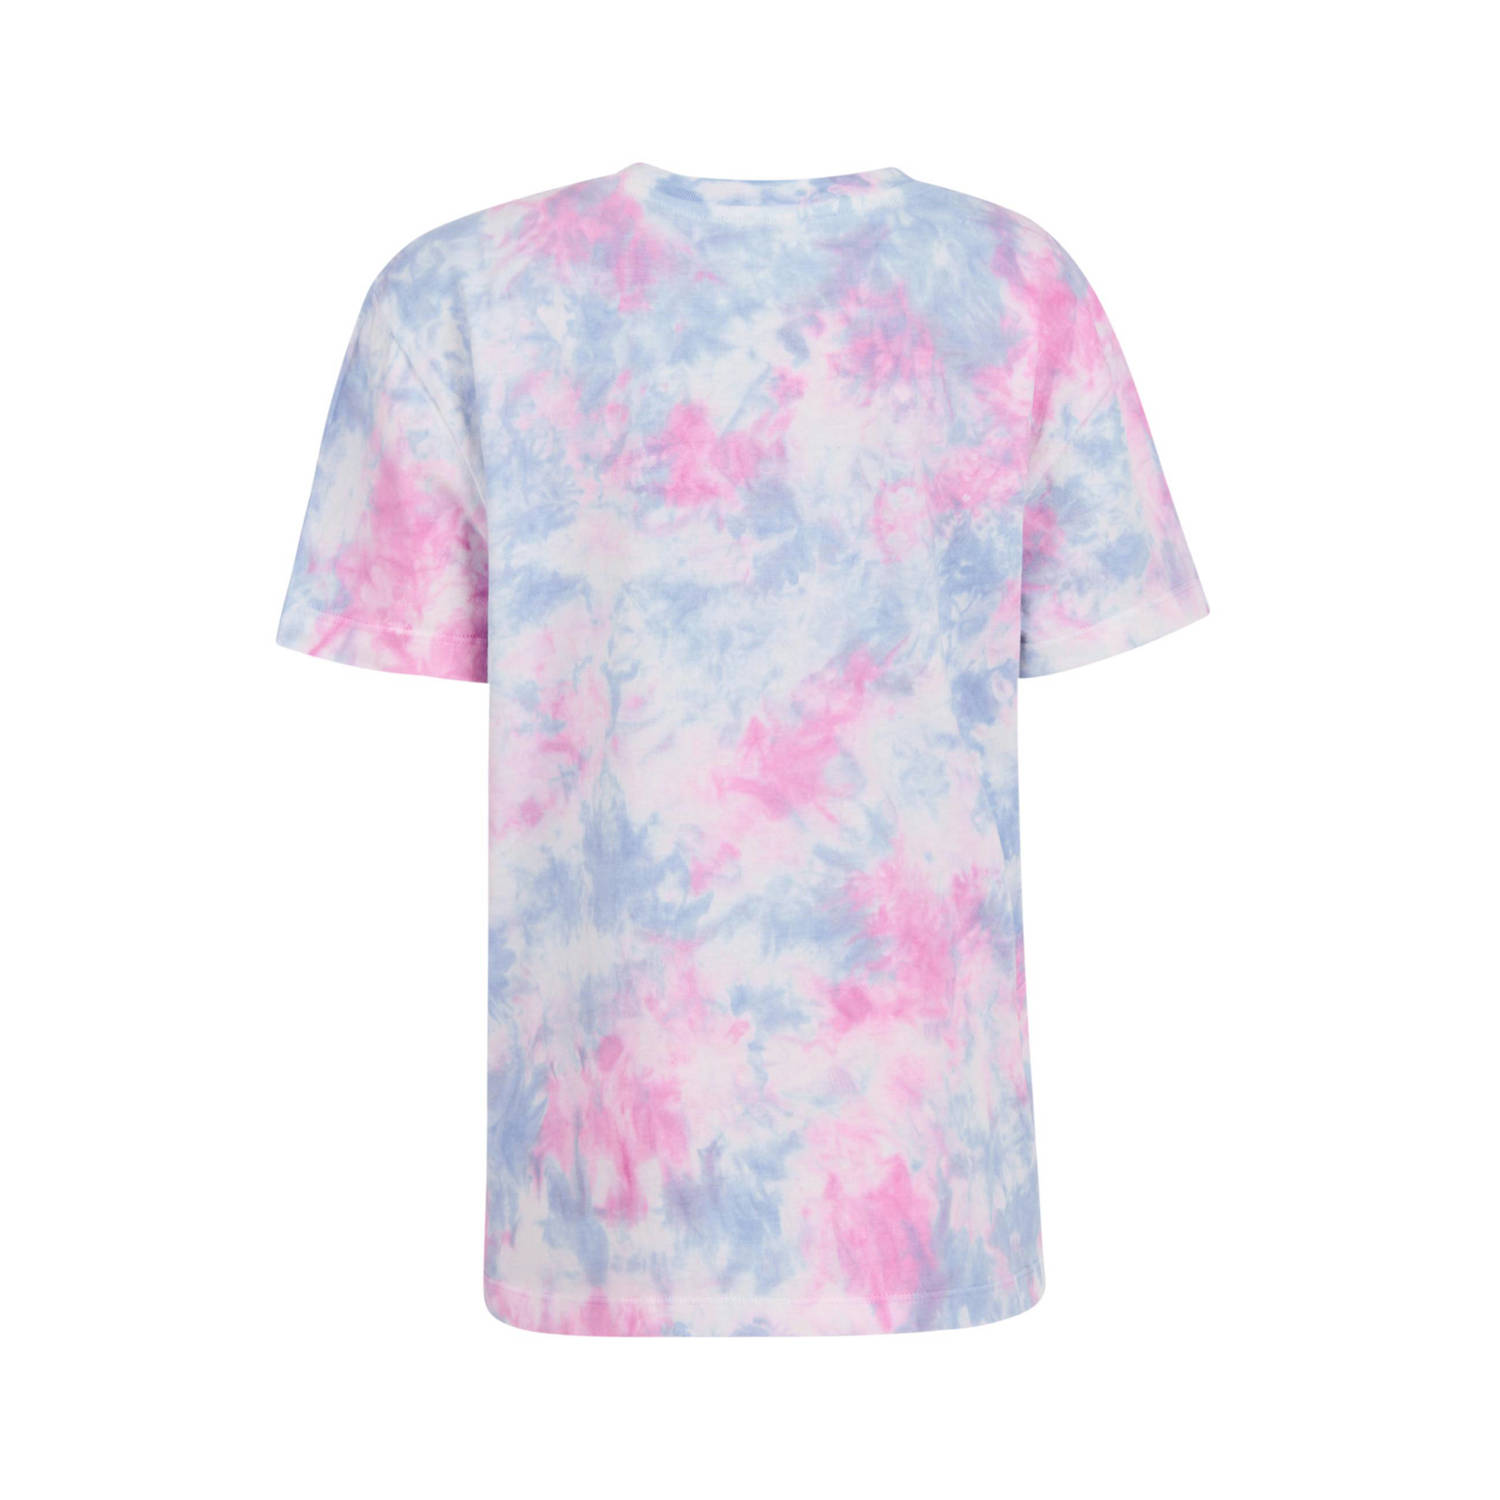 Shoeby tie-dye T-shirt lila roze blauw